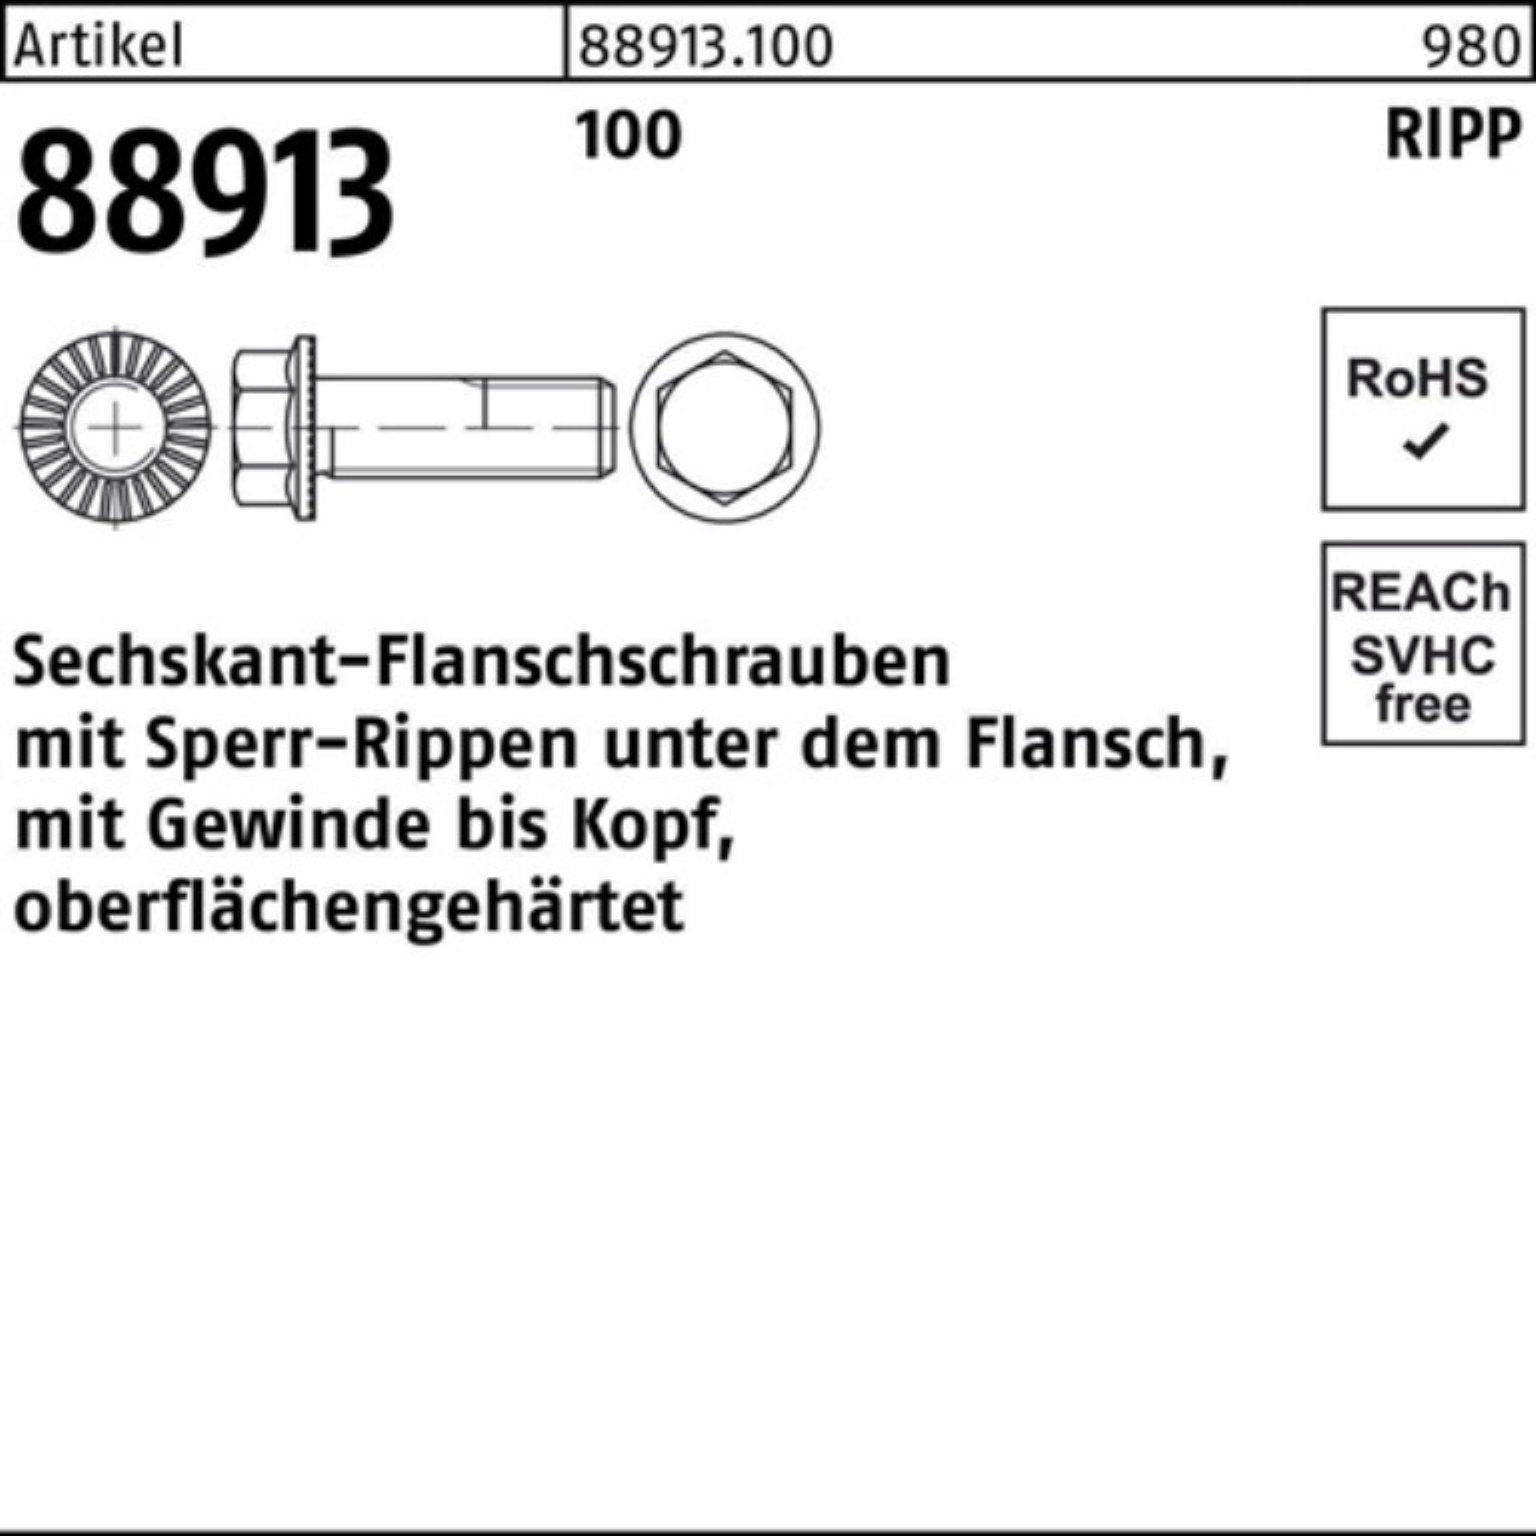 Reyher R VG 10 Sperr-Ripp Schraube 100 M6x Pack 88913 500er 5 Sechskantflanschschraube